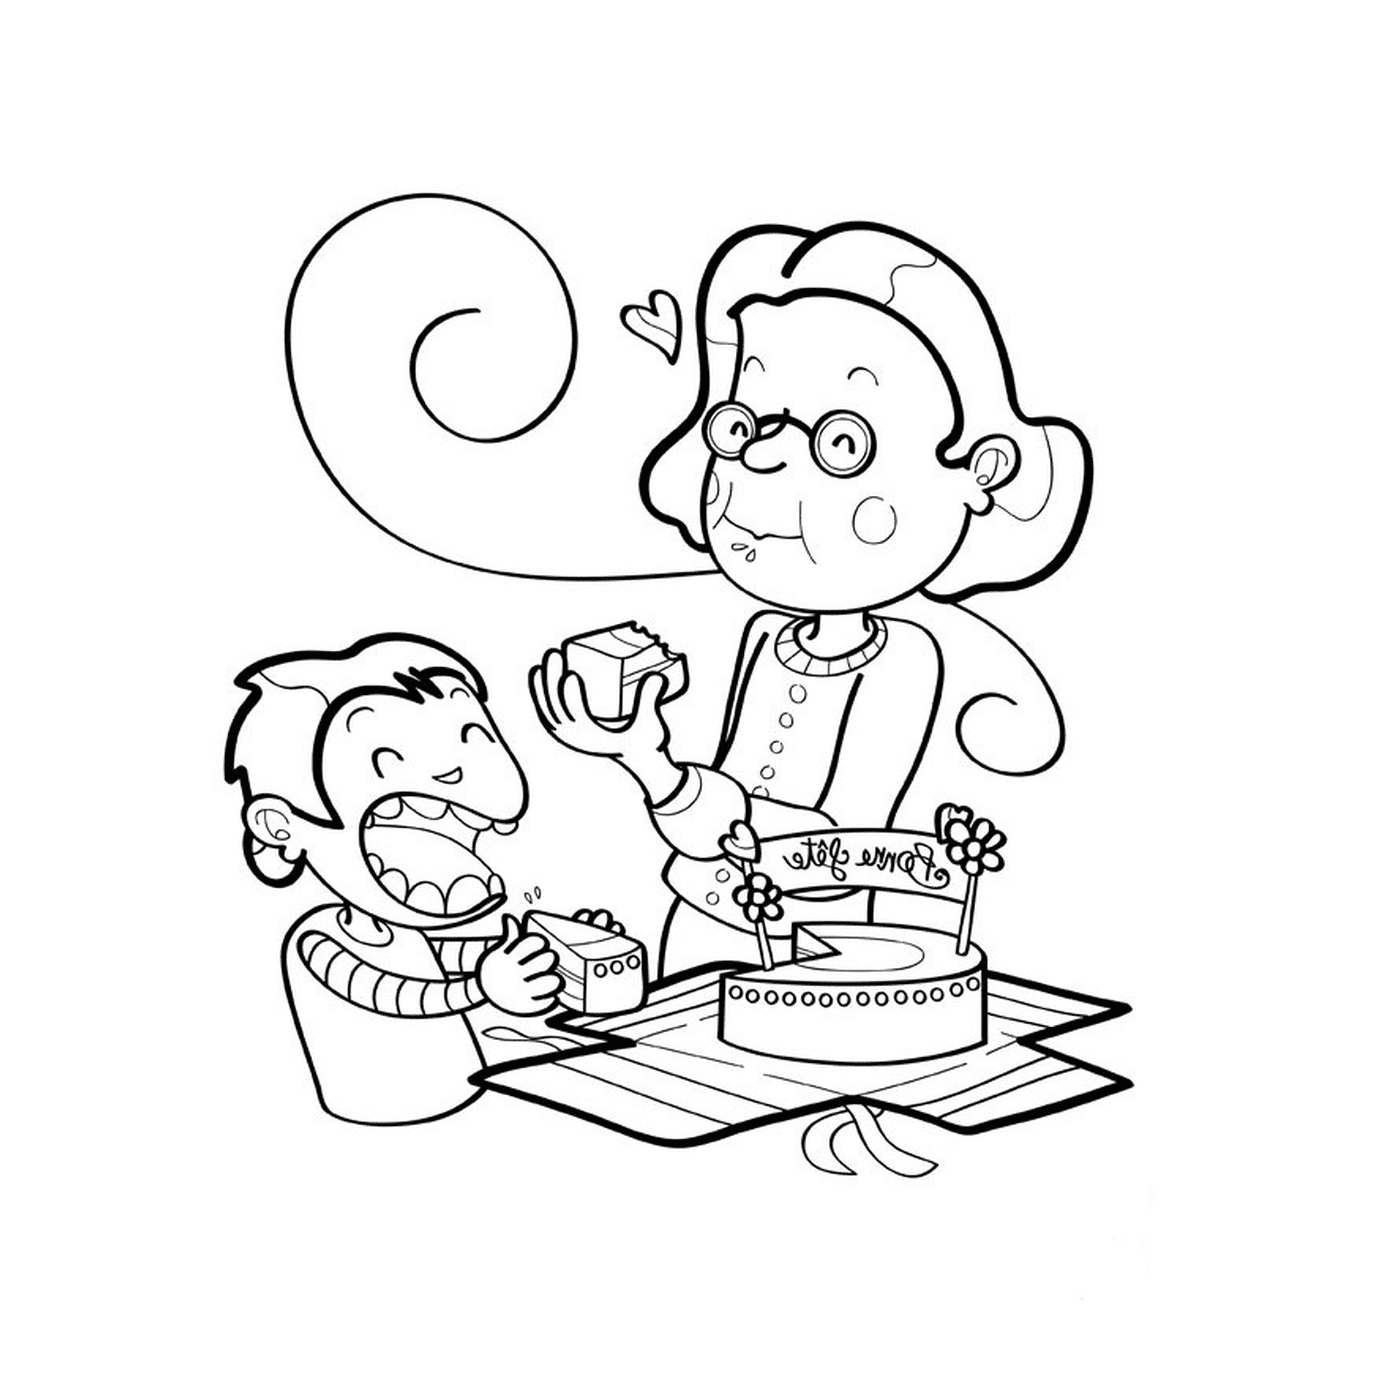  Uma mulher velha e um macaco comendo bolo 